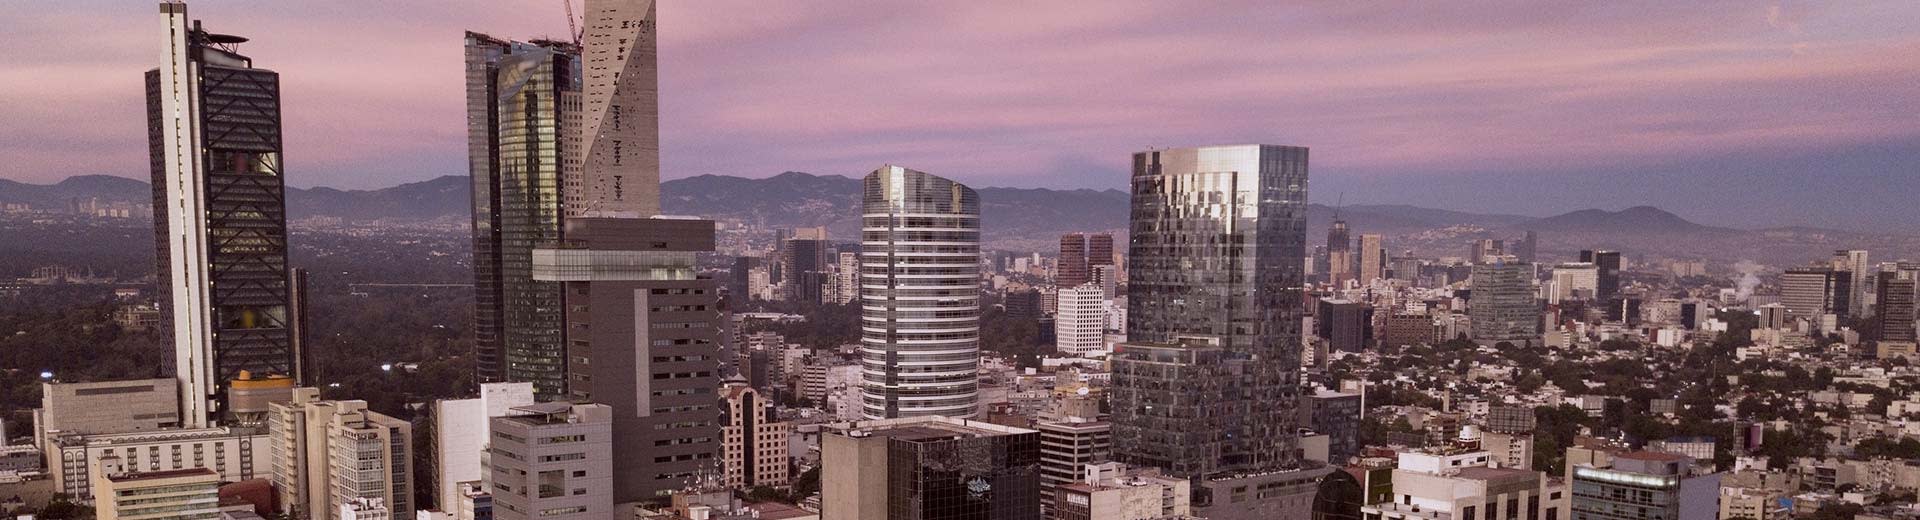 Wolkenkratzer im Vordergrund, während sich Mexiko -Stadt hinter sich erstreckt, mit dem lila Licht der Dämmerung oder der Morgendämmerung im Hintergrund.